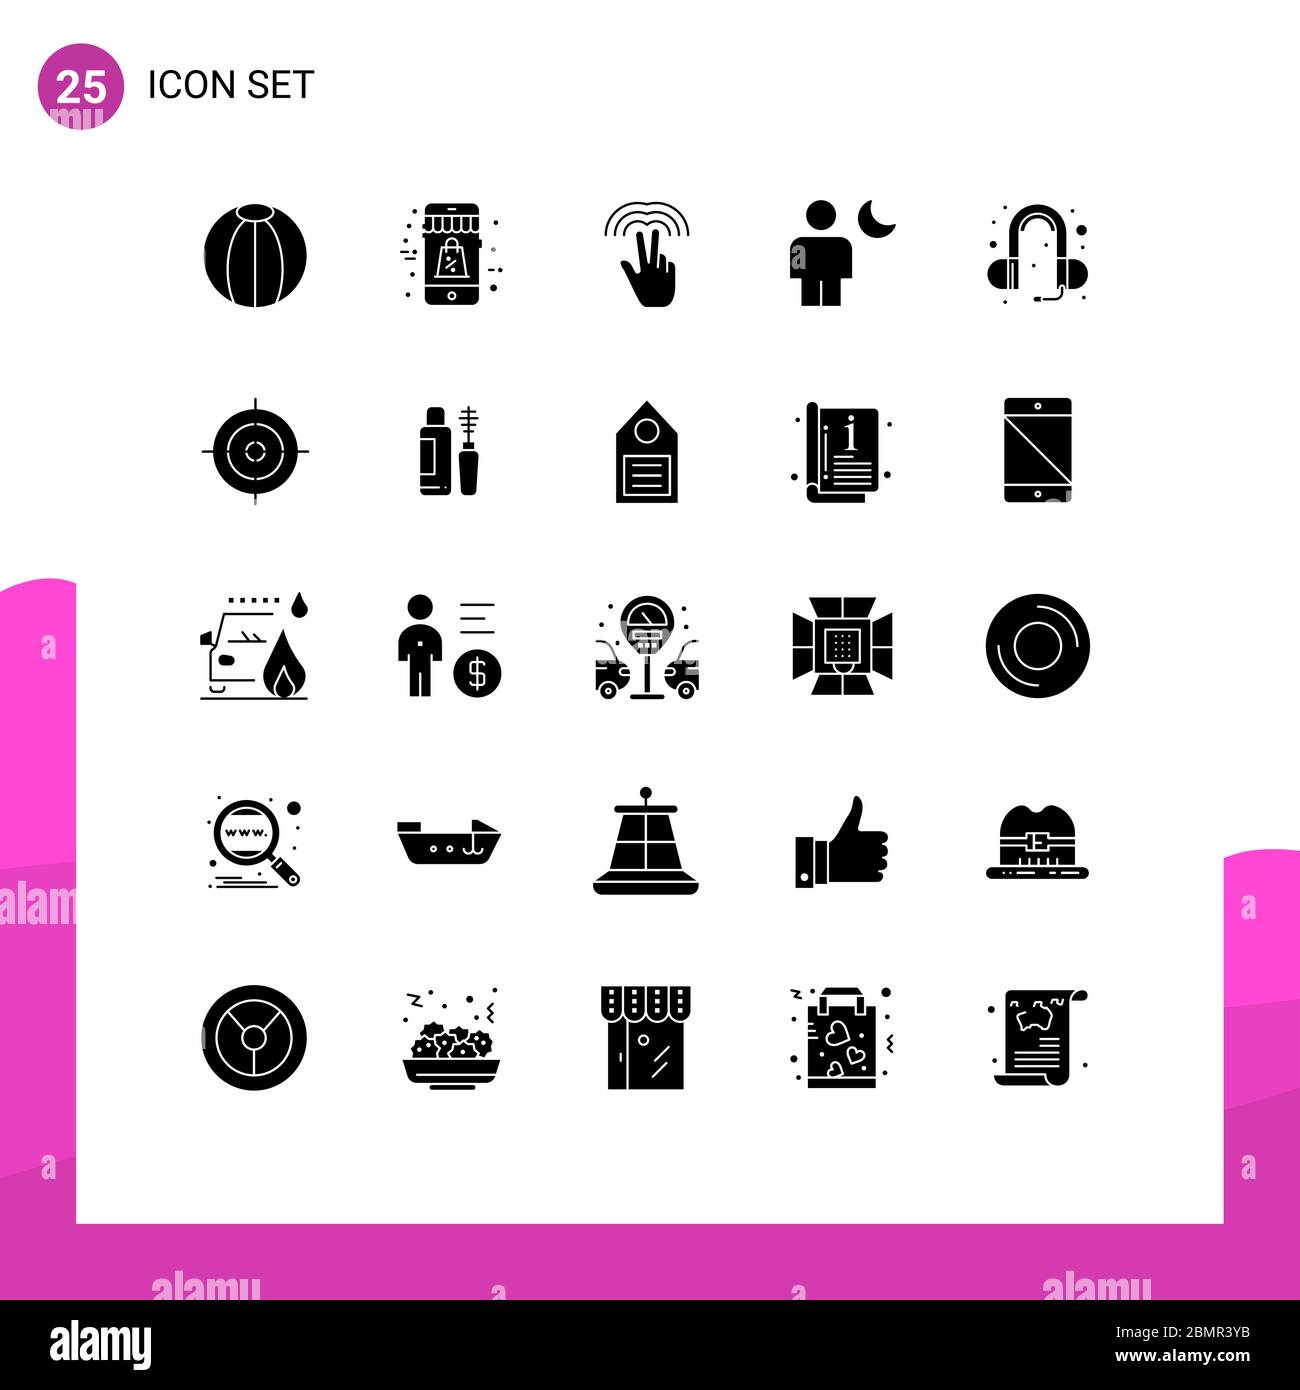 25 interfaccia utente Solid Glyph pacchetto di segni moderni e simboli di orecchio, luna, doppio, umano, avatar Editable Vector Design Elements Illustrazione Vettoriale